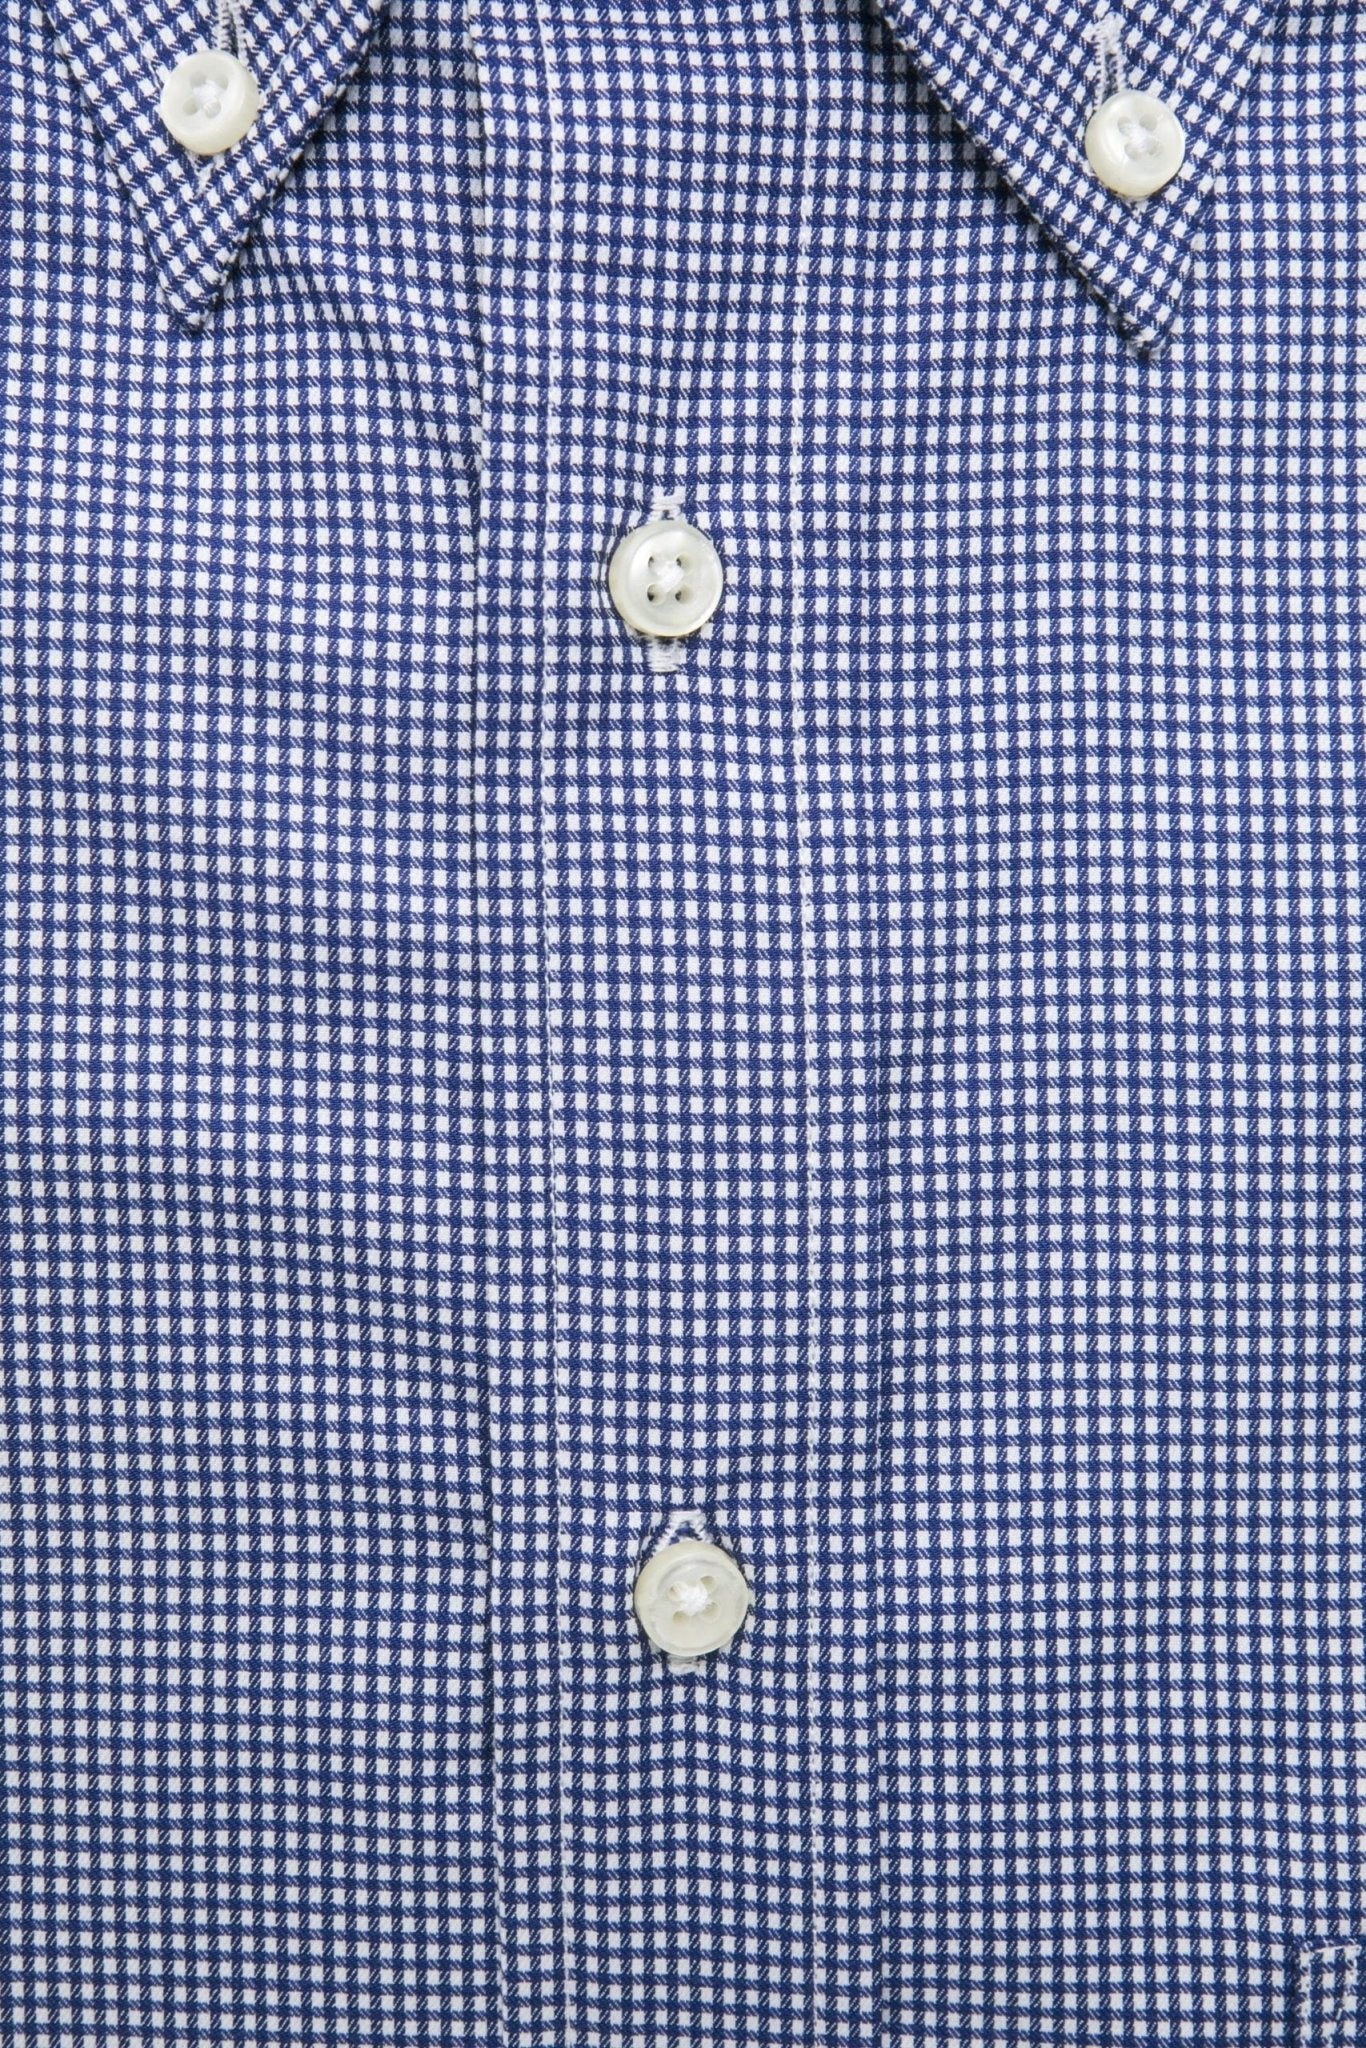 Robert Friedman Blue Cotton Shirt - Fizigo